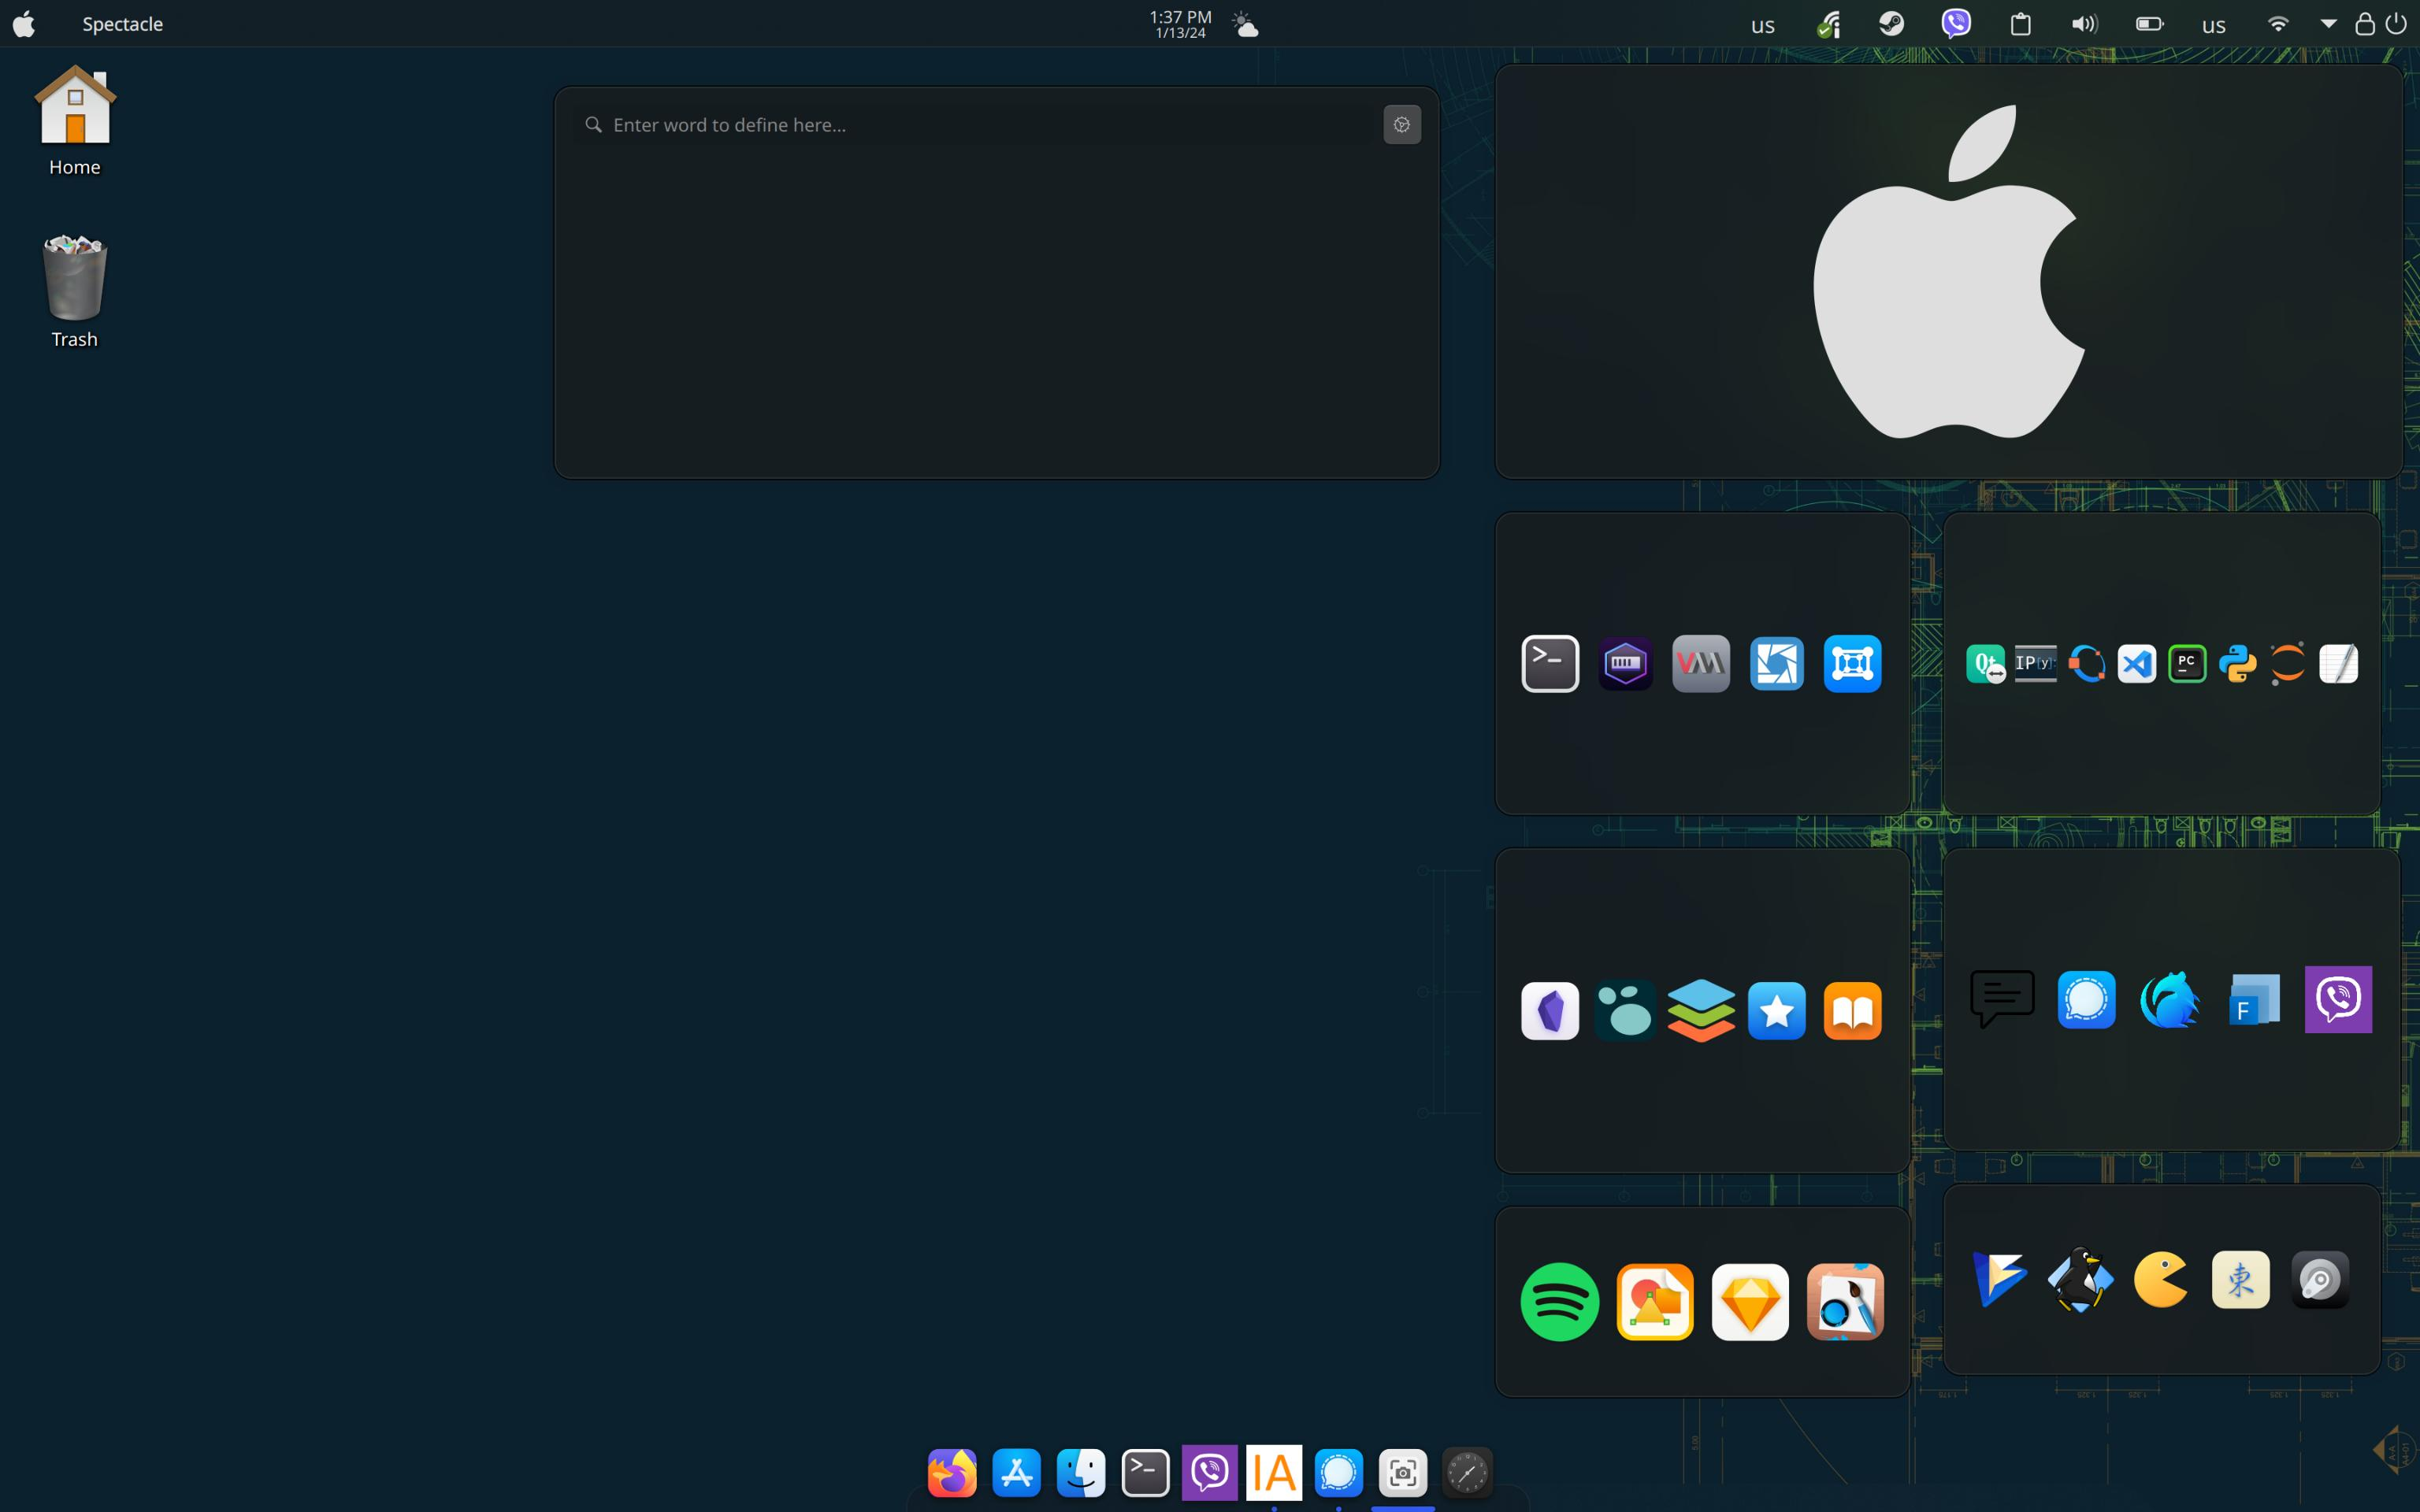 KDE on Wayland